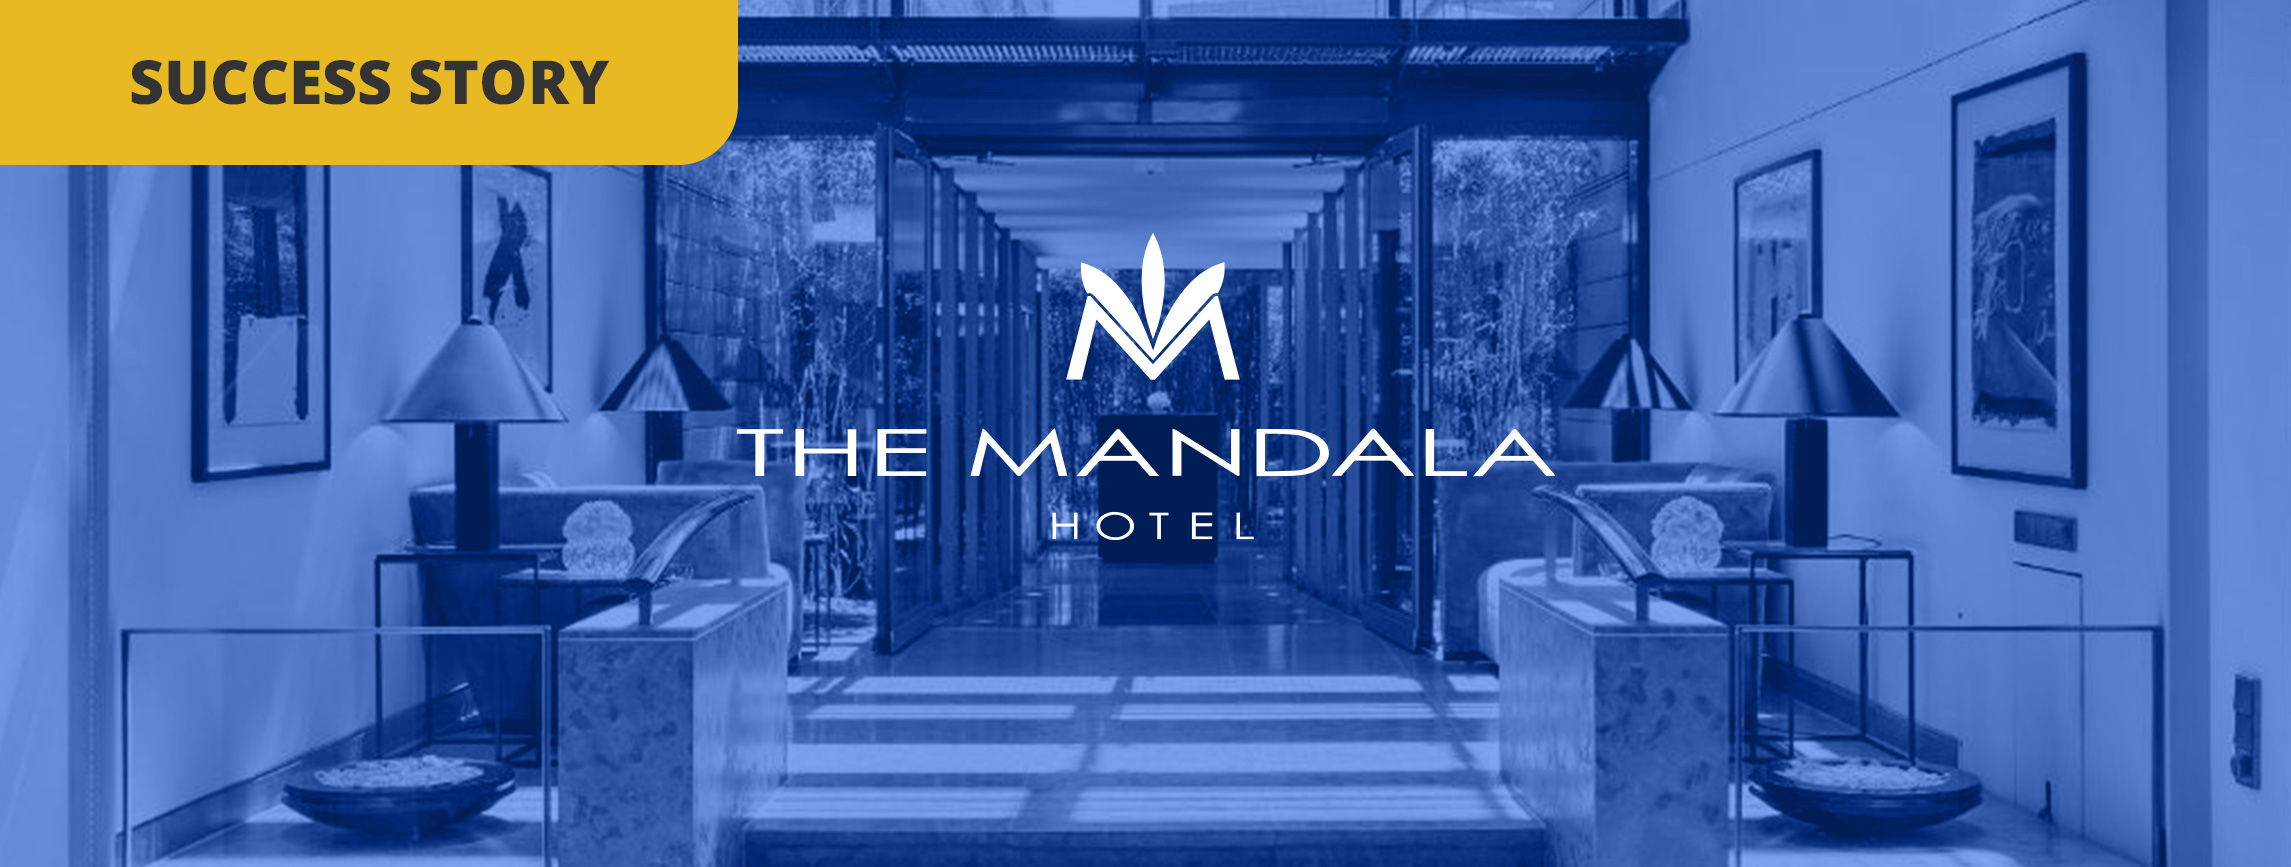 Comment The Mandala Hotel améliore l'expérience client grâce à l'Instant Survey